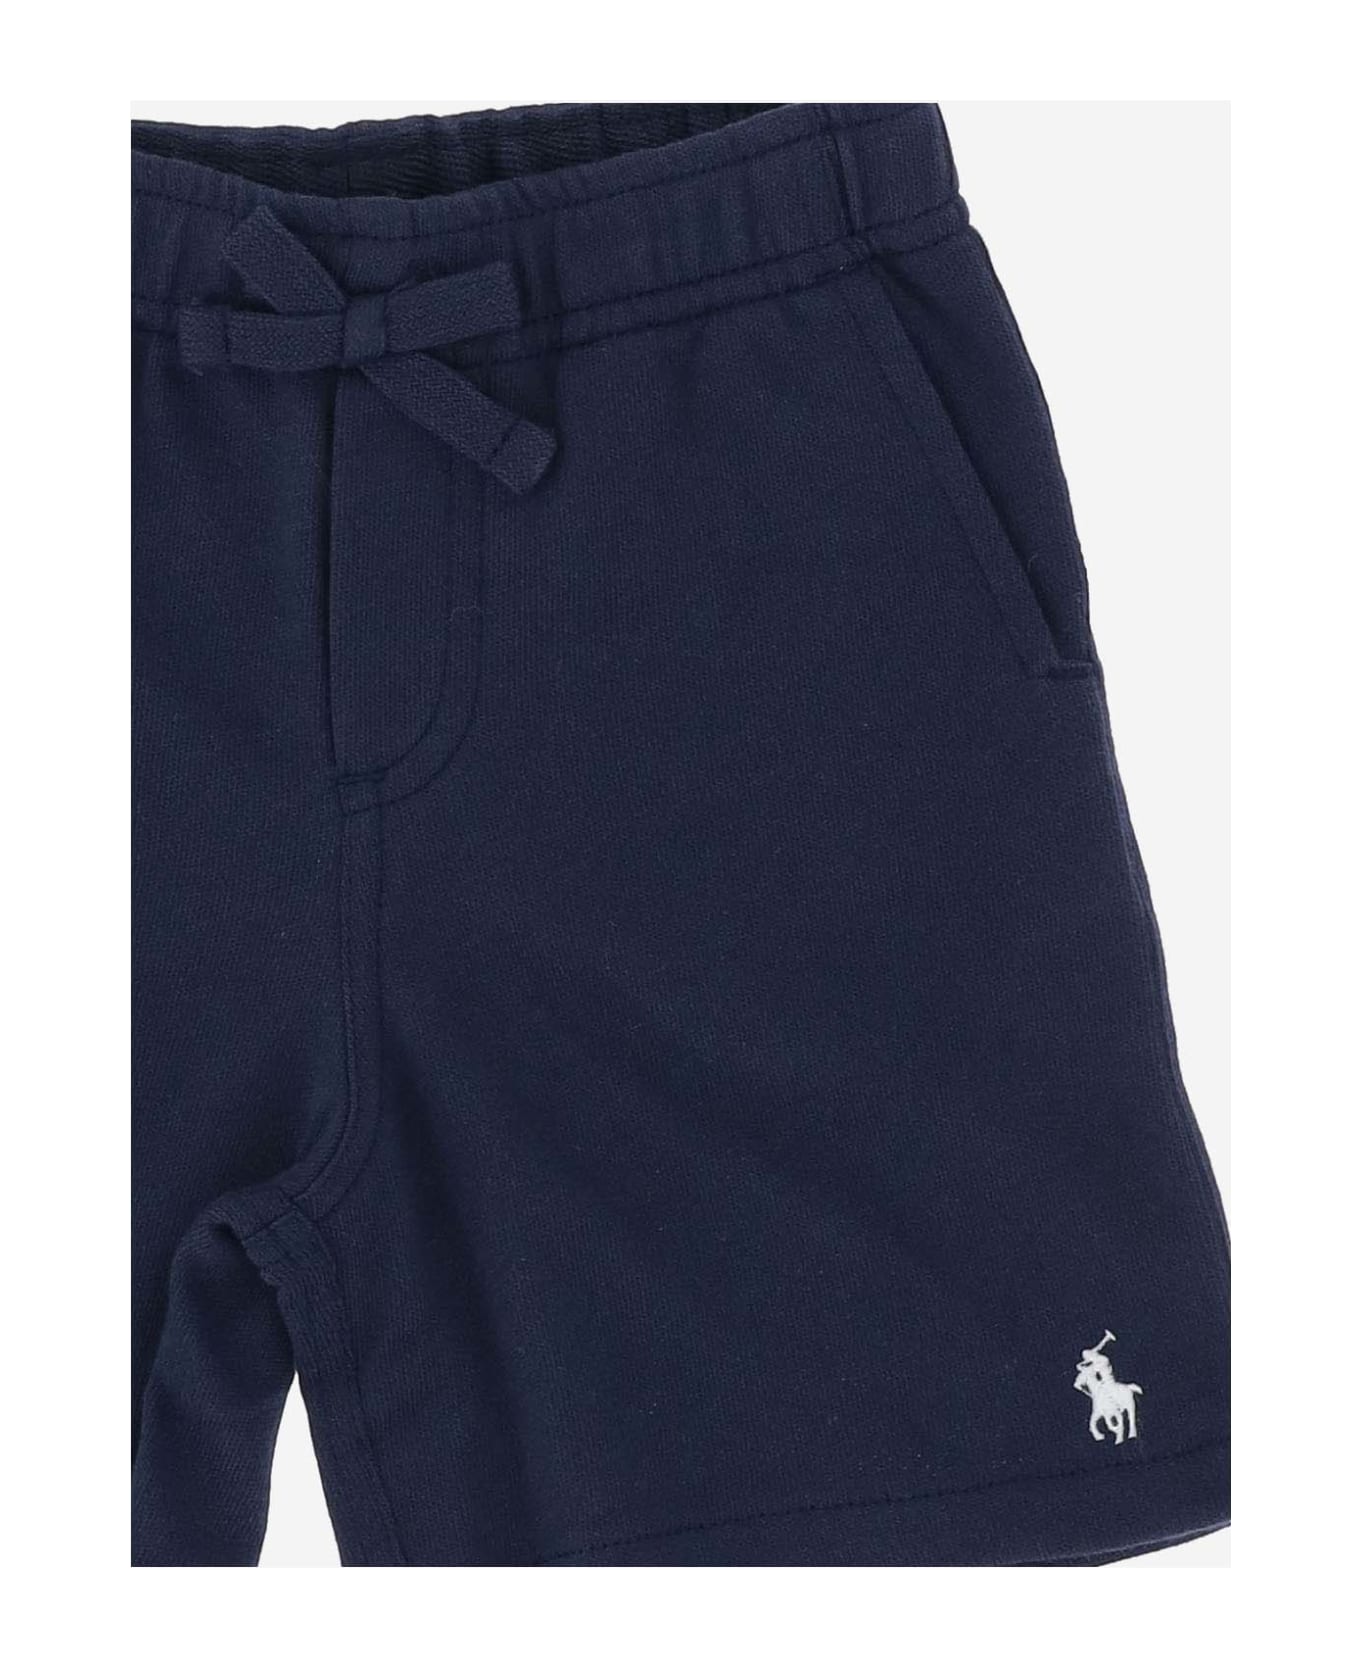 Polo Ralph Lauren Cotton Short Pants With Logo - Blue